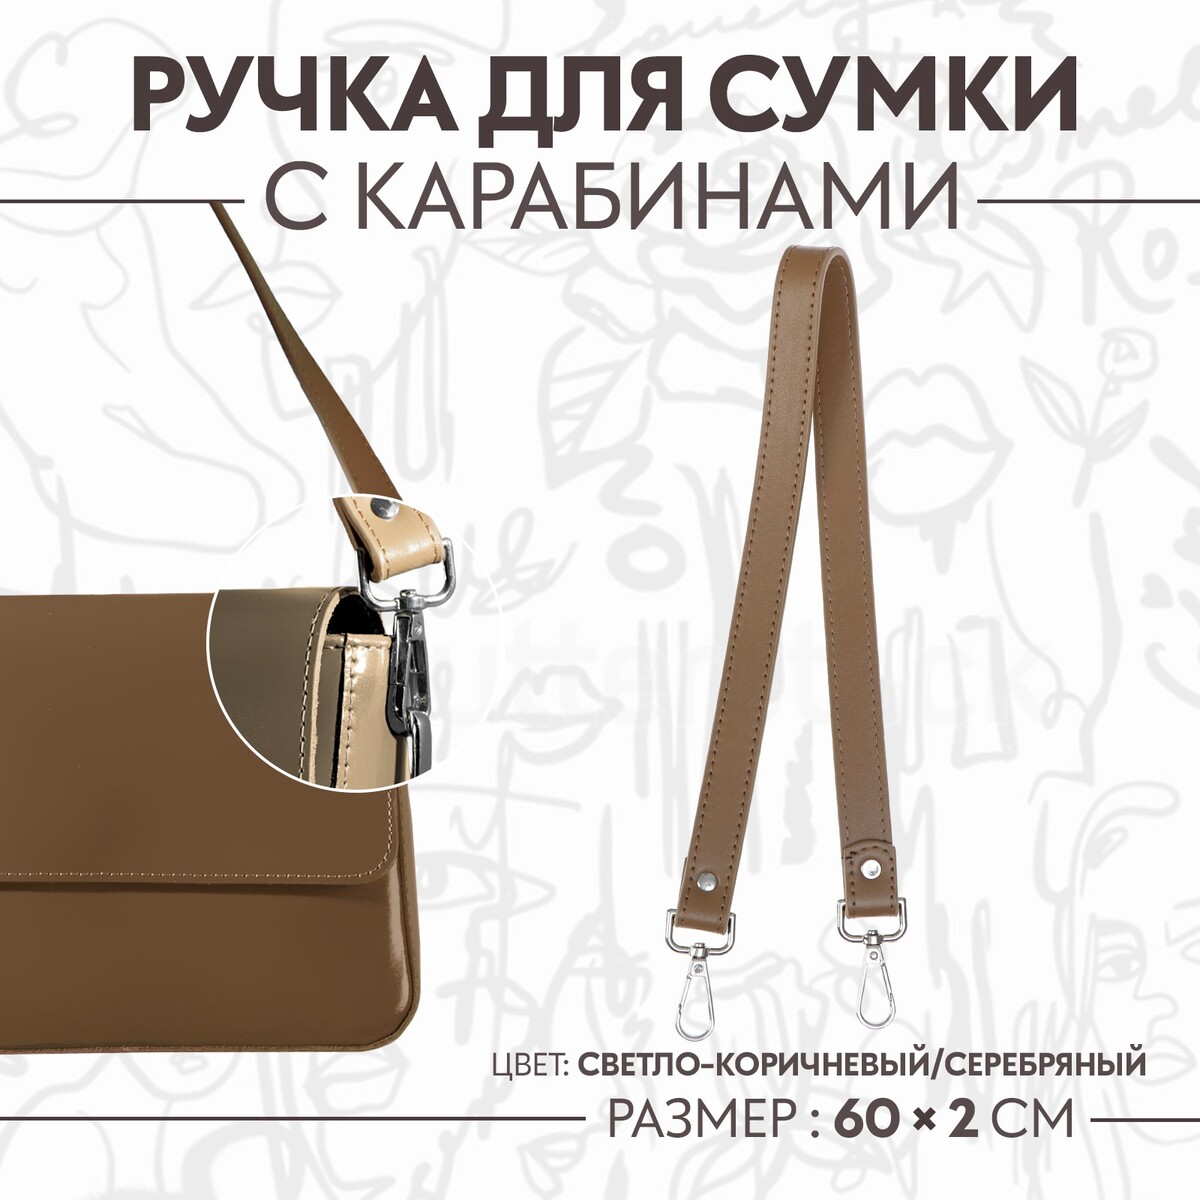 Ручка для сумки, с карабинами, 60 × 2 см, цвет светло-коричневый ручка шнурок для сумки с карабинами 120 × 0 6 см коричневый